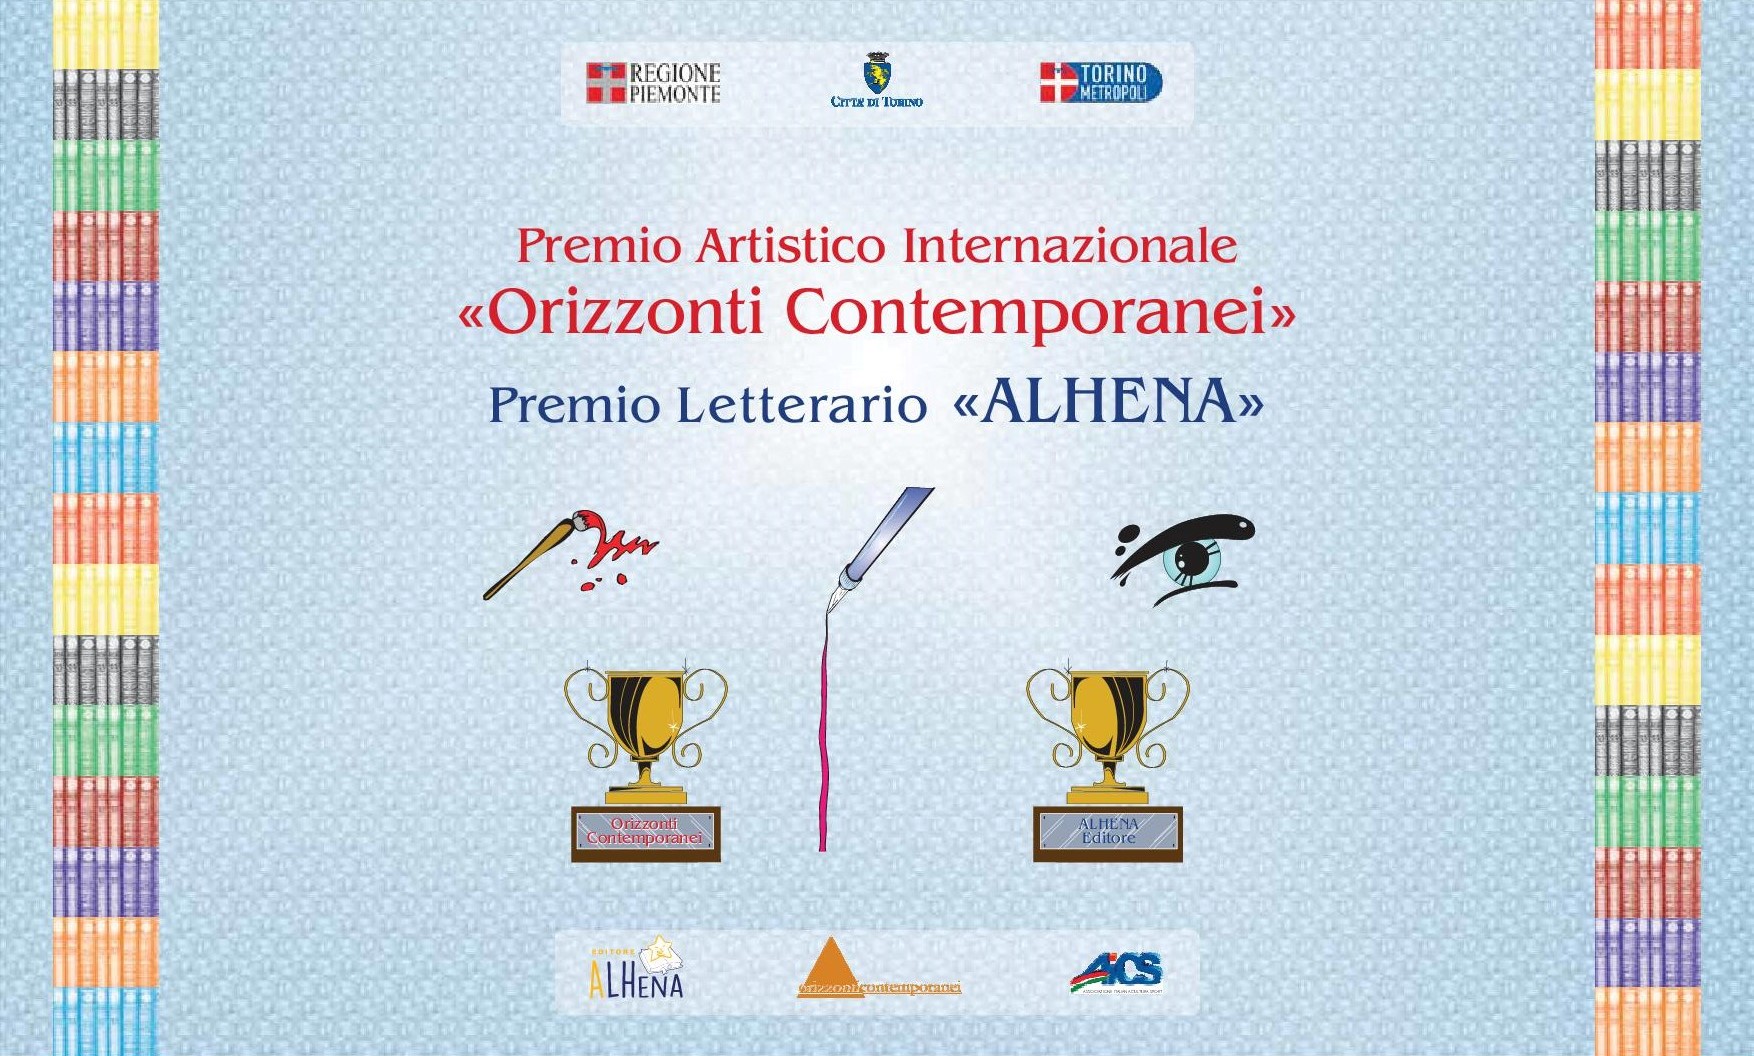 Premio "Orizzonti Contemporanei" - Premio "Alhena"